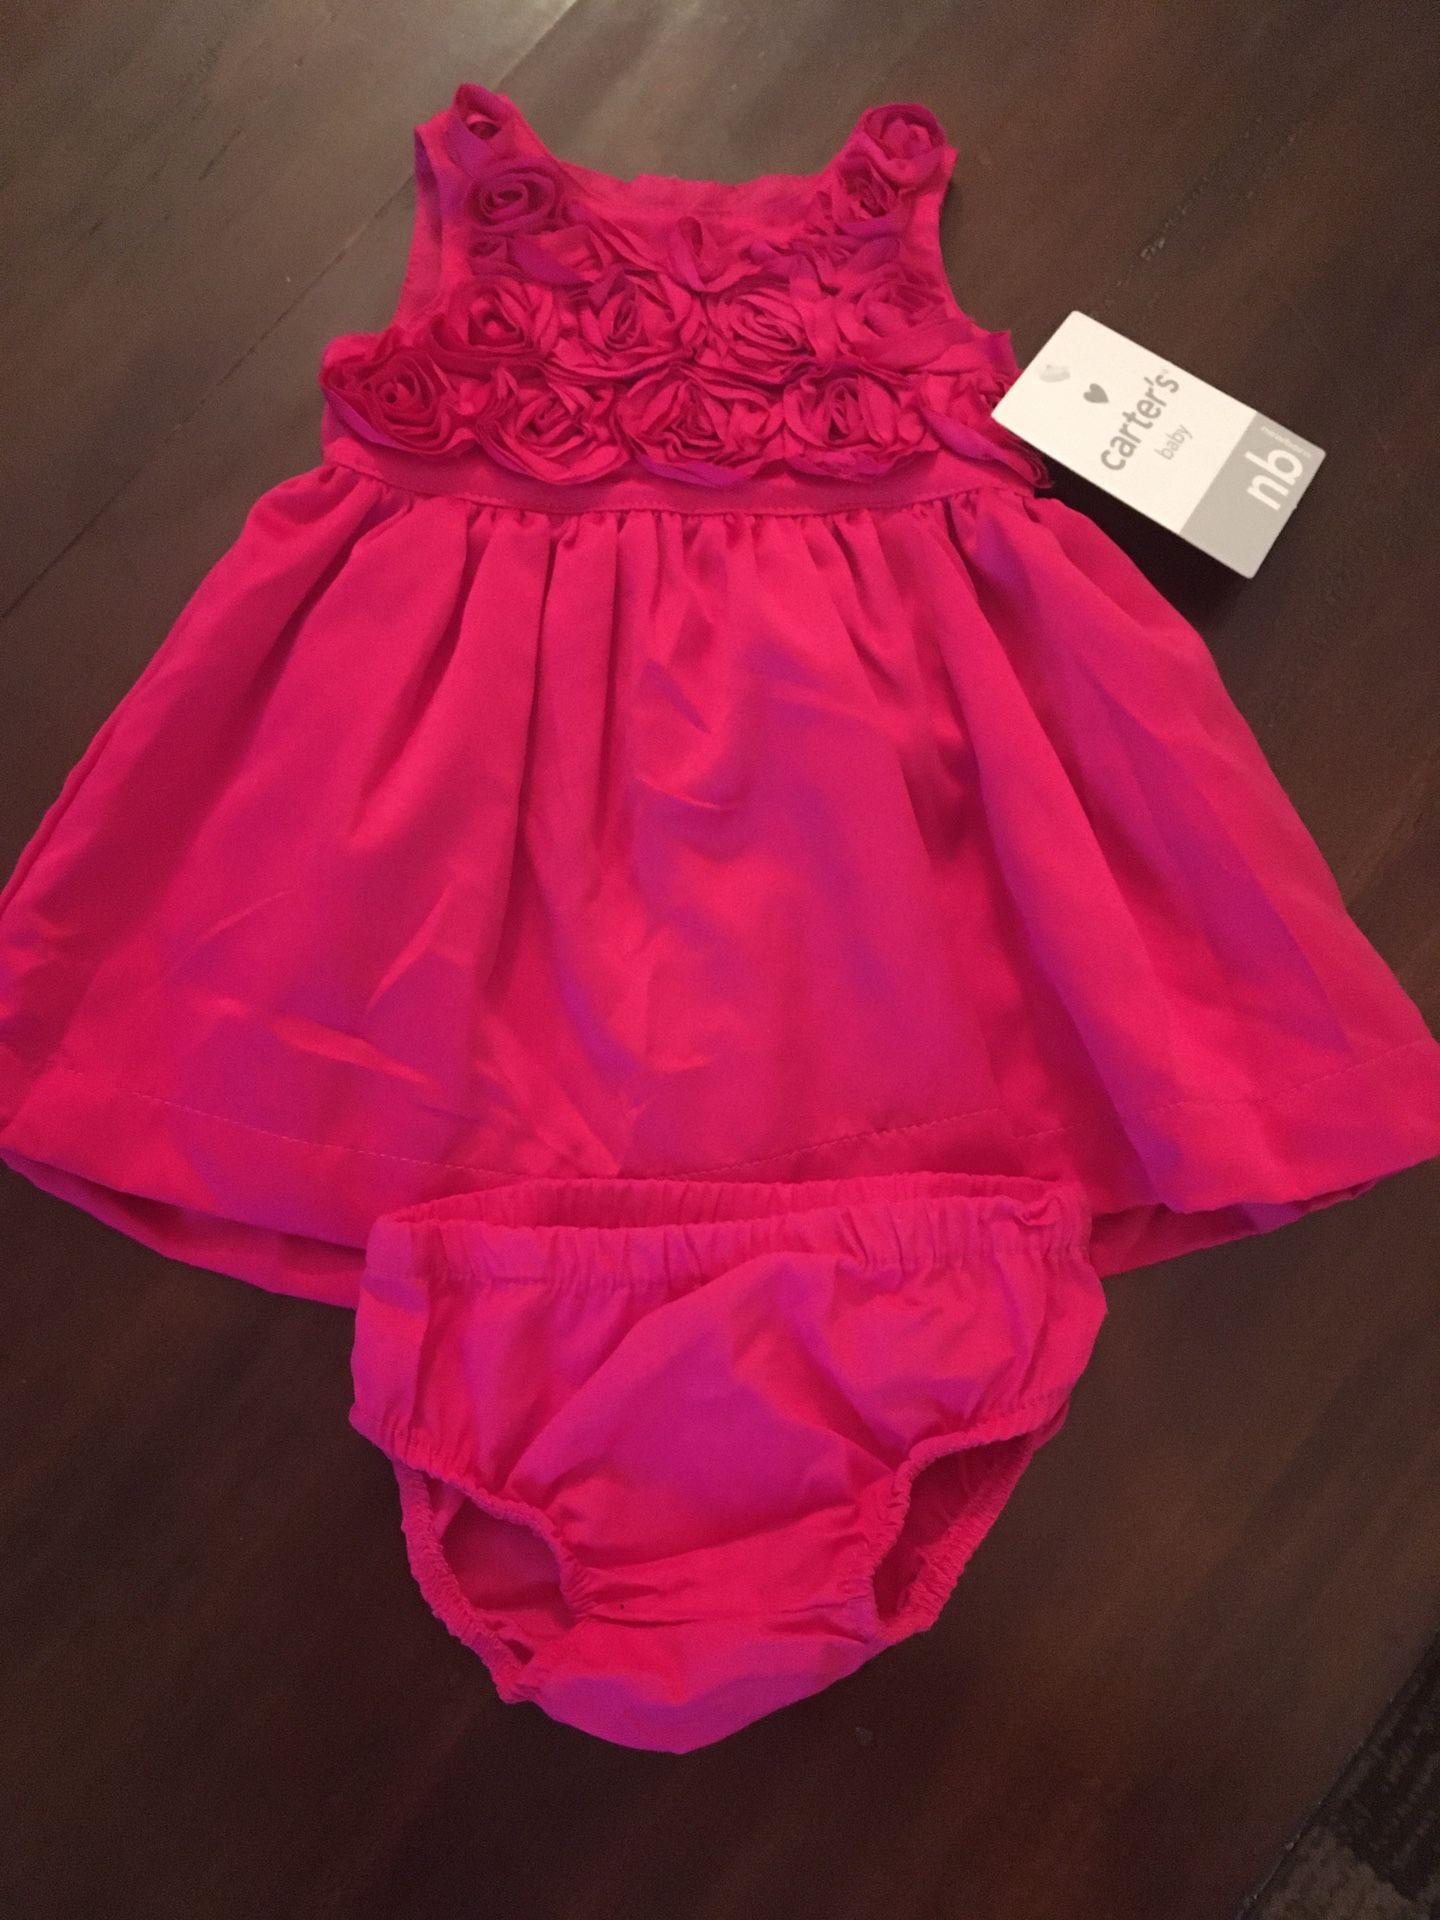 New girls size newborn Carter’s dress